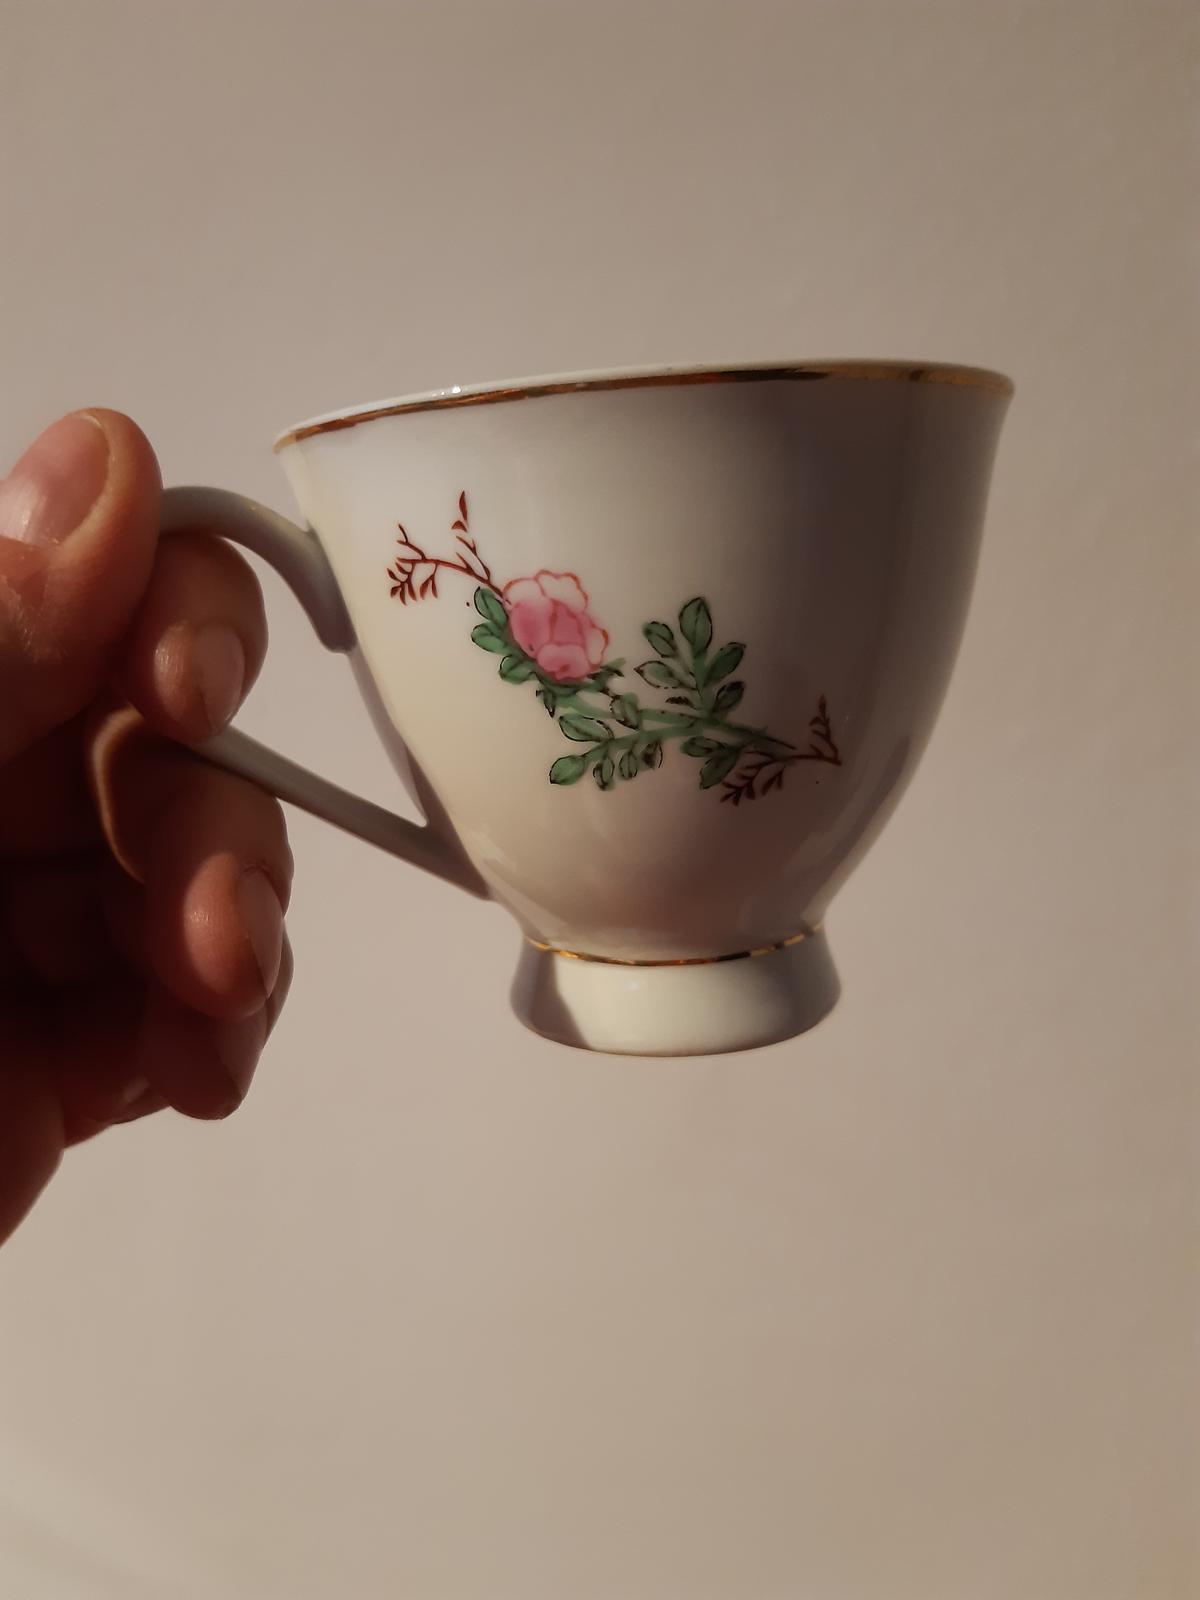 Prodám sadu šálků na čaj s motivem růžiček - Obrázek č. 1